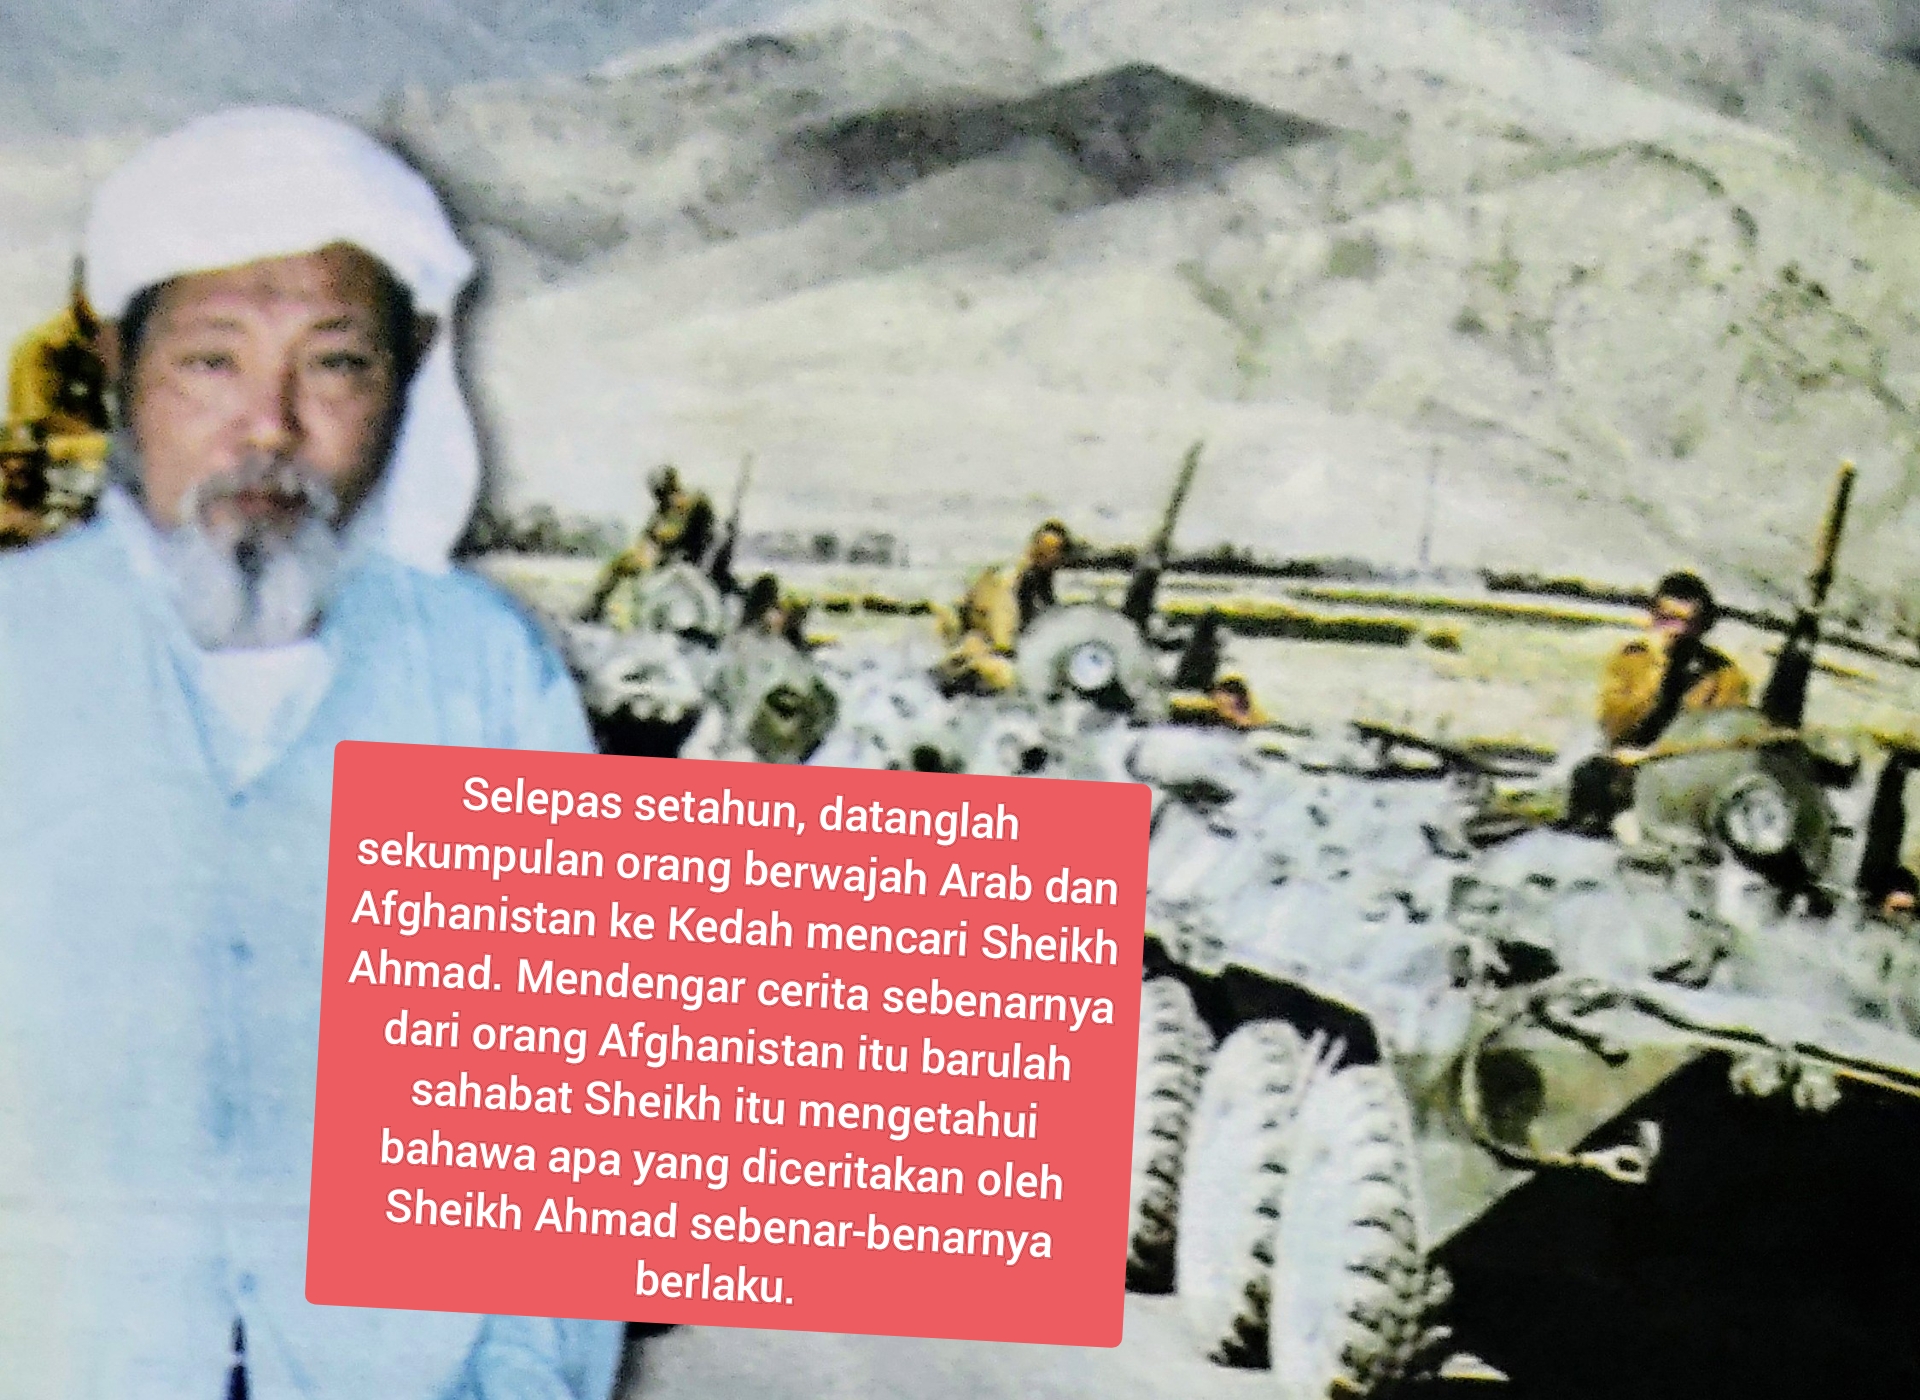  Wali Kedah hancurkan kereta kebal Rusia di Afghanistan